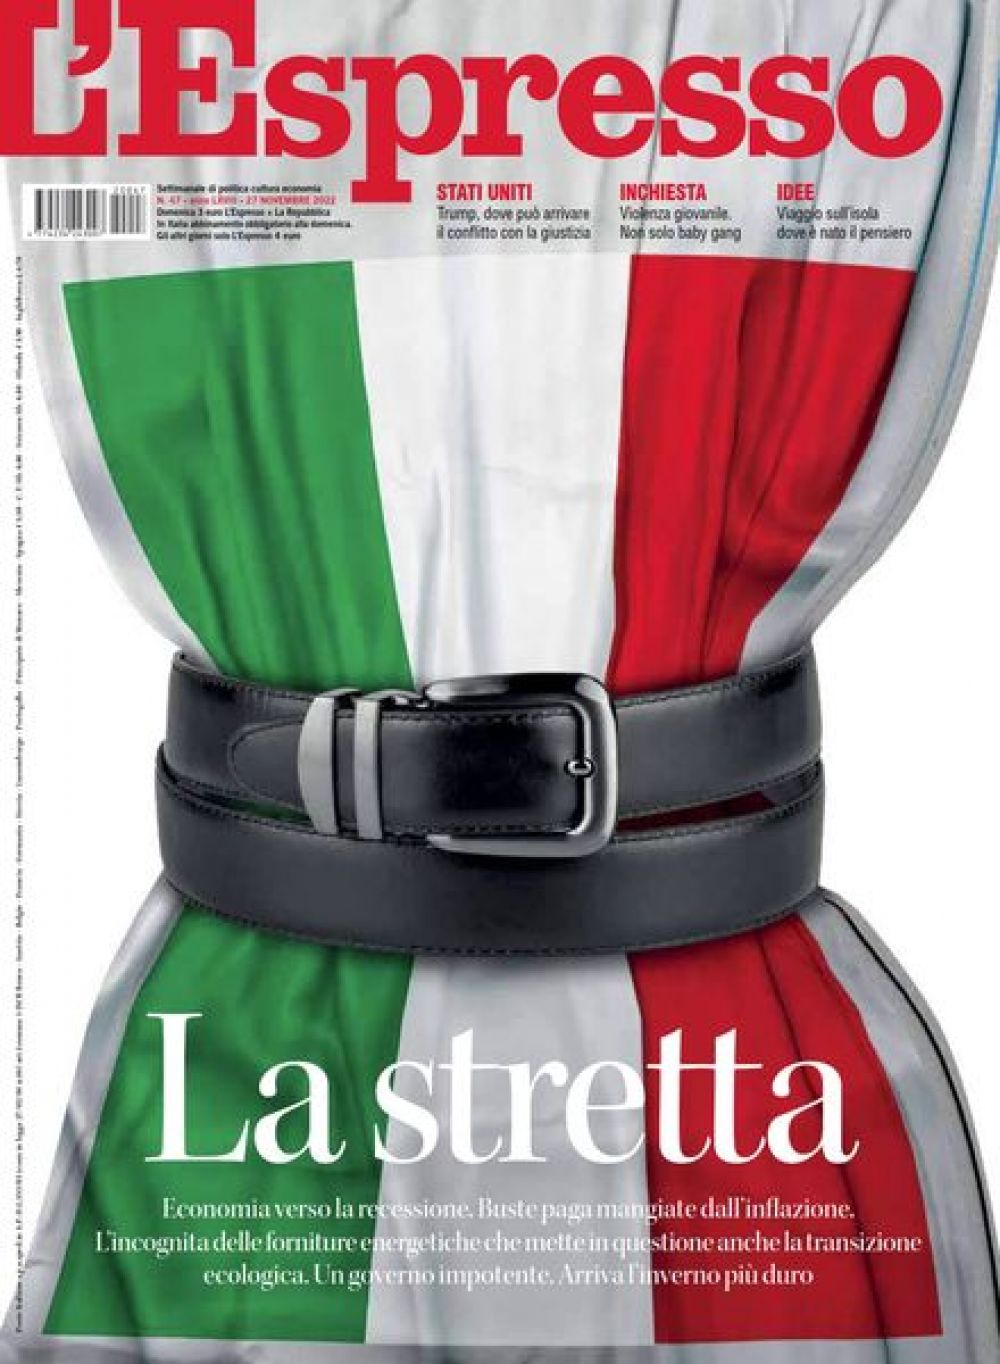 Главный вопрос итальянского L’Espresso (октябрьский номер) – что будет с Италией и Европой из-за антироссийских санкций? Проблема, которая остро волновала западноевропейцев на тот момент – резкий рост инфляции. При этом, по последним данным, цены и в еврозоне, и в США начали снижаться…